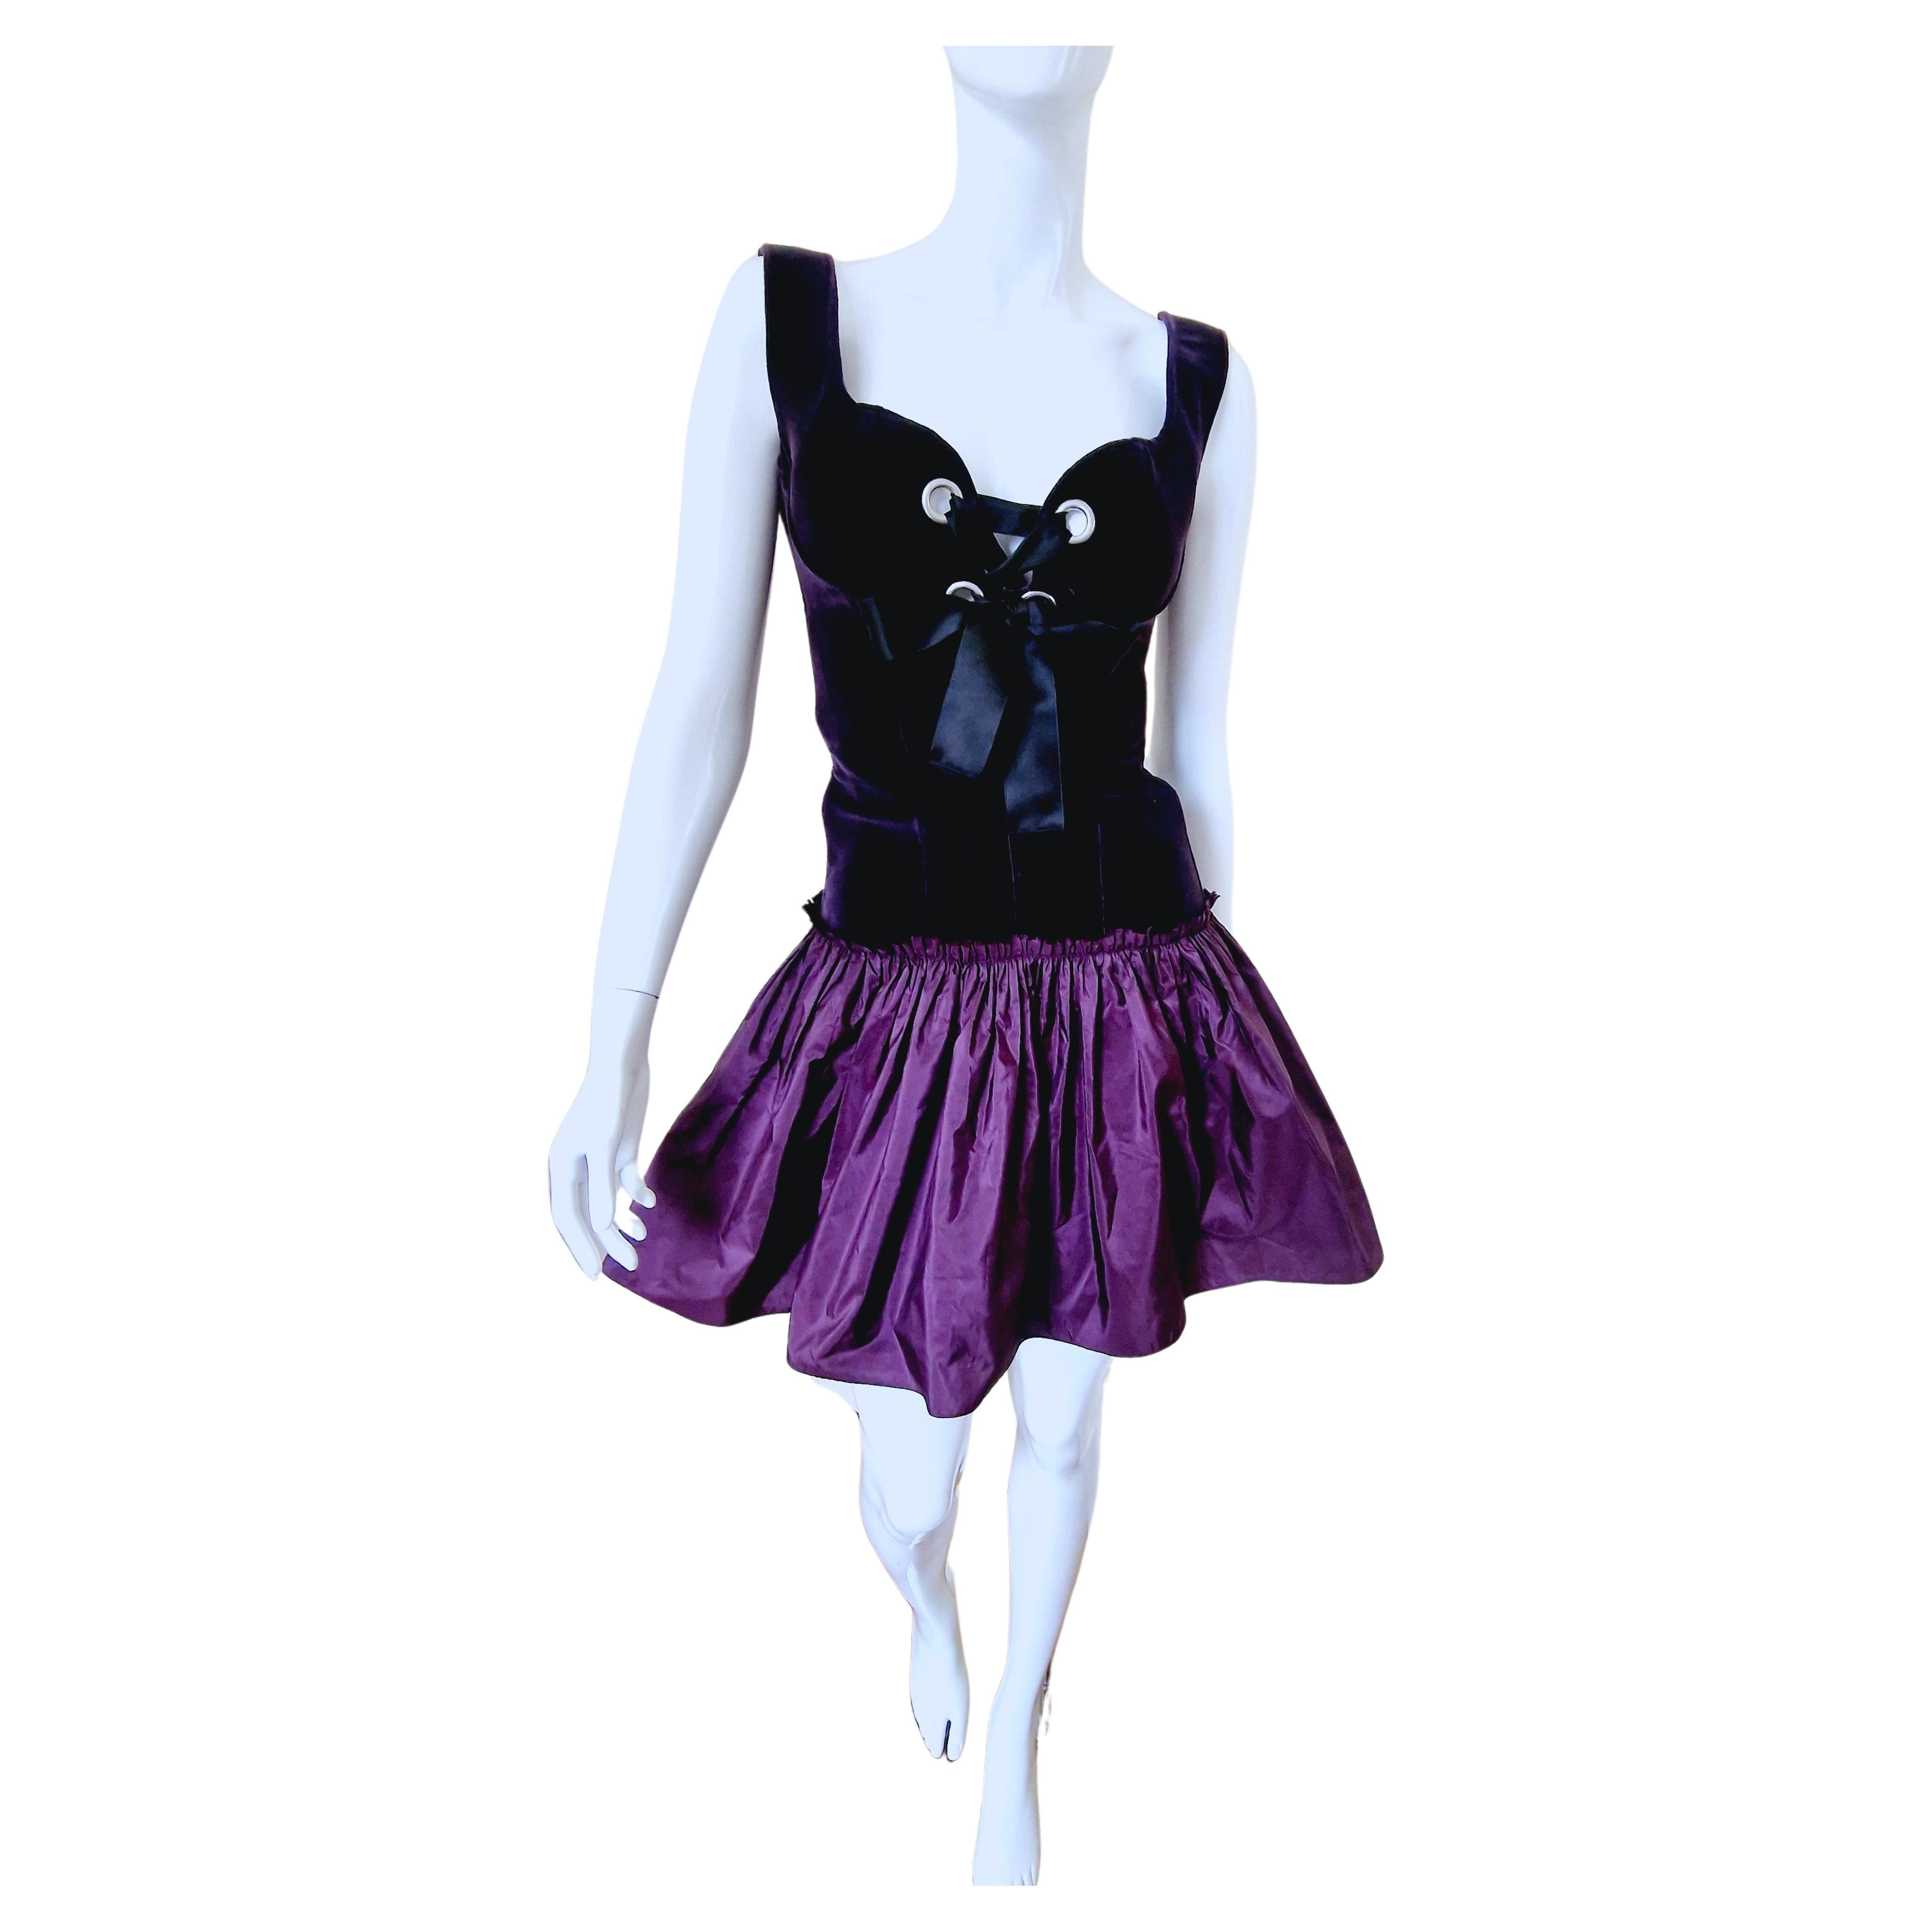 Alexander McQueen Corset Bustier Lace Up Tutu Petticoat Violet Medium Gown Dress For Sale